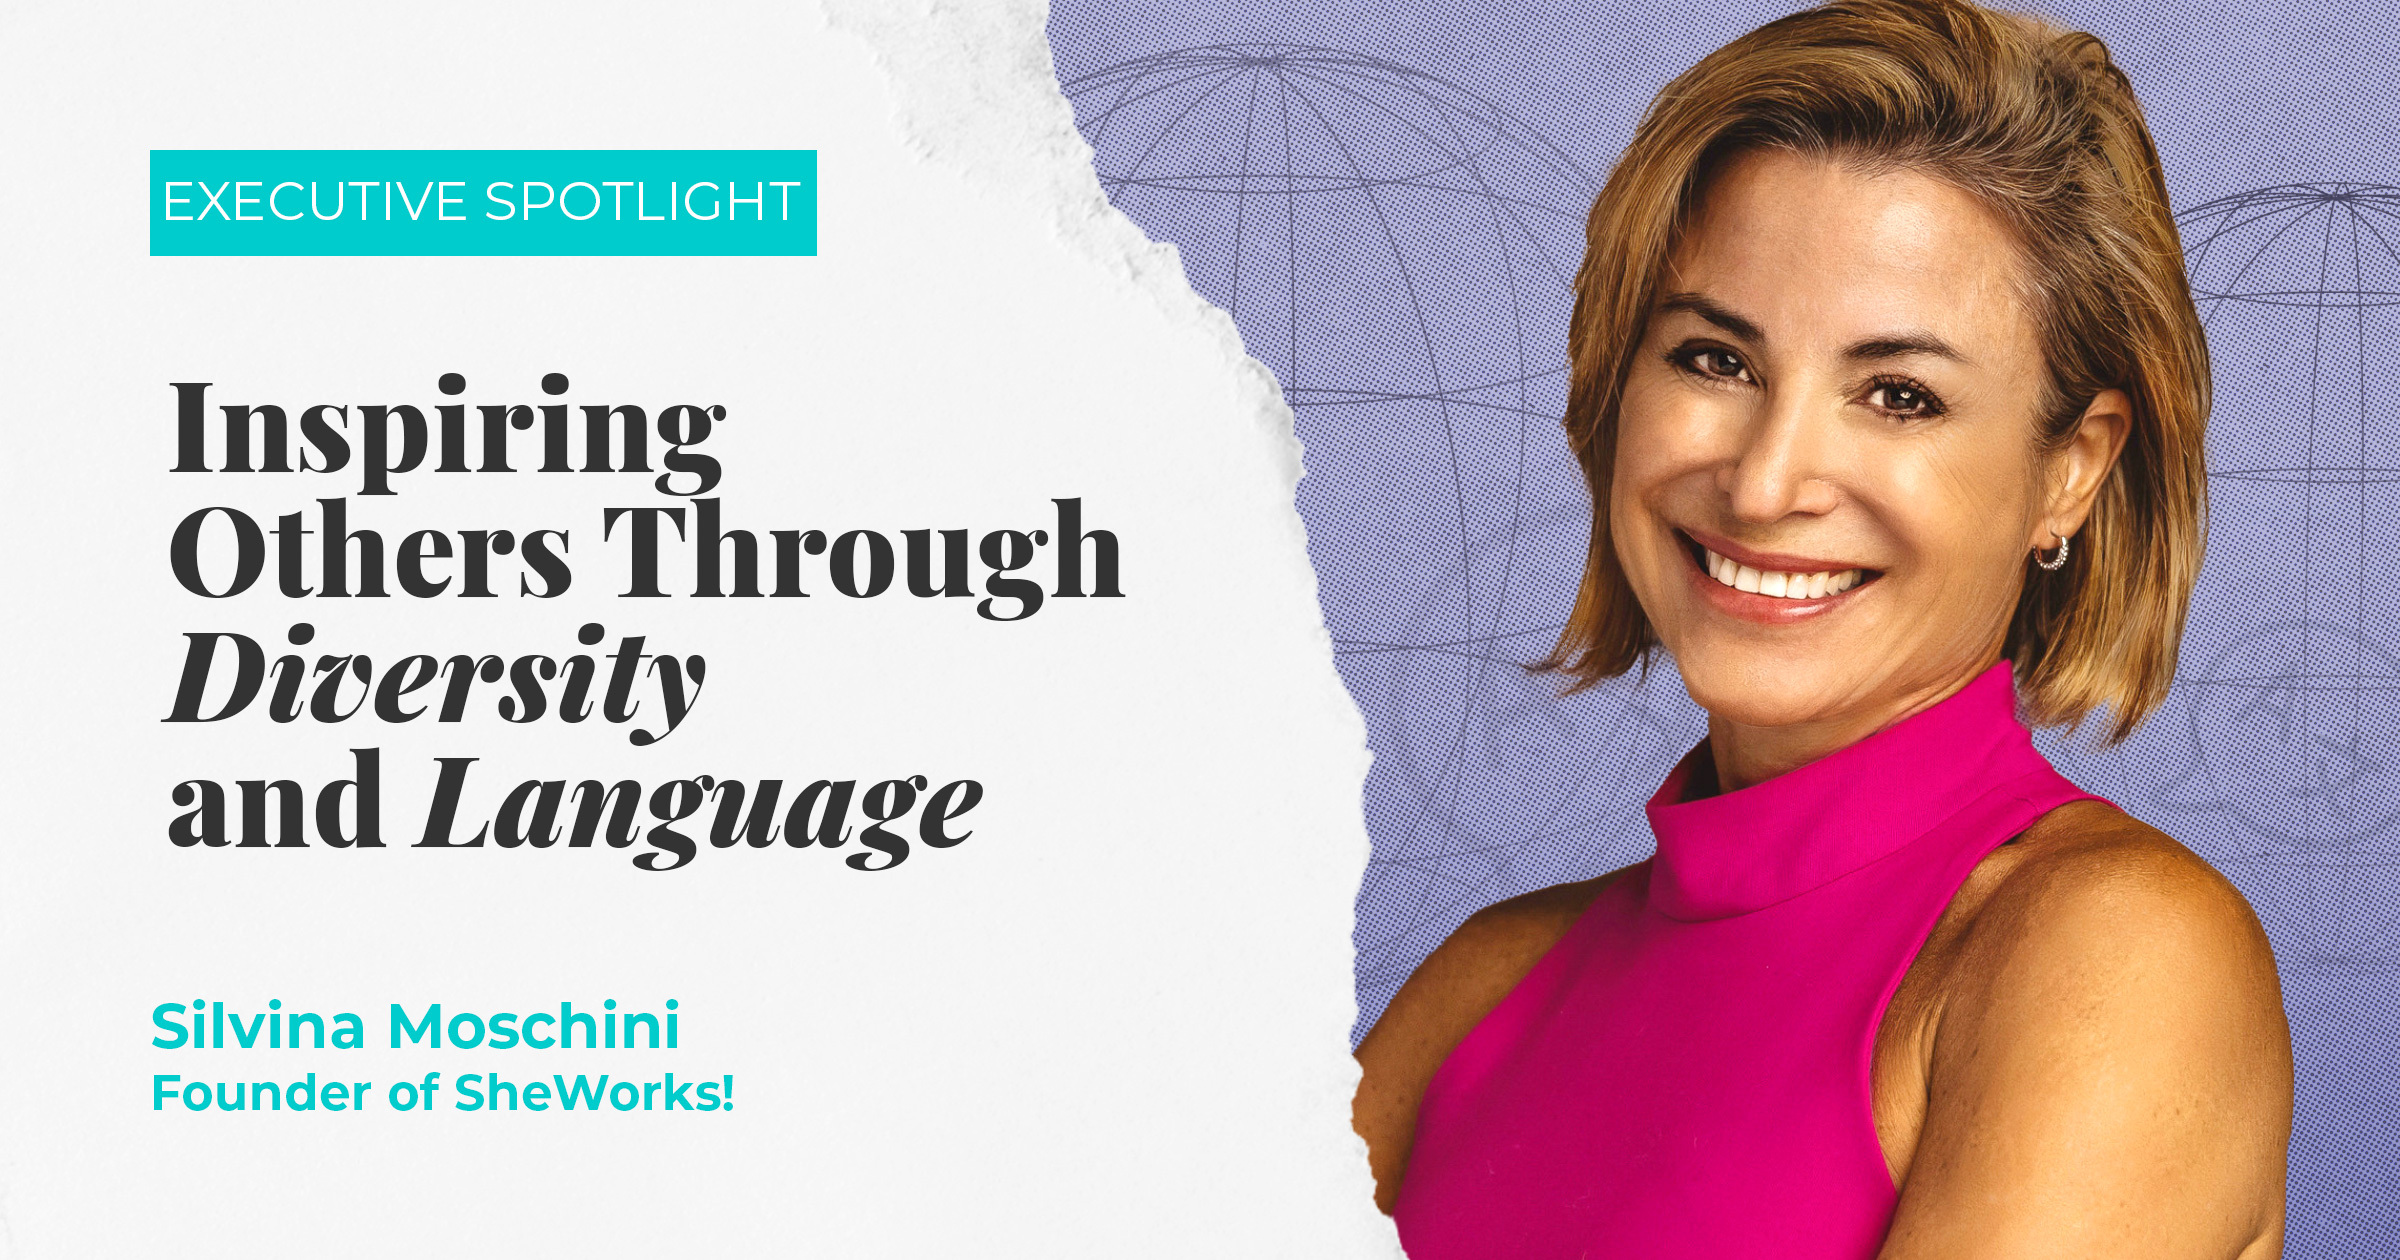 Executive Spotlight: Inspiring Others through Diversity and Language